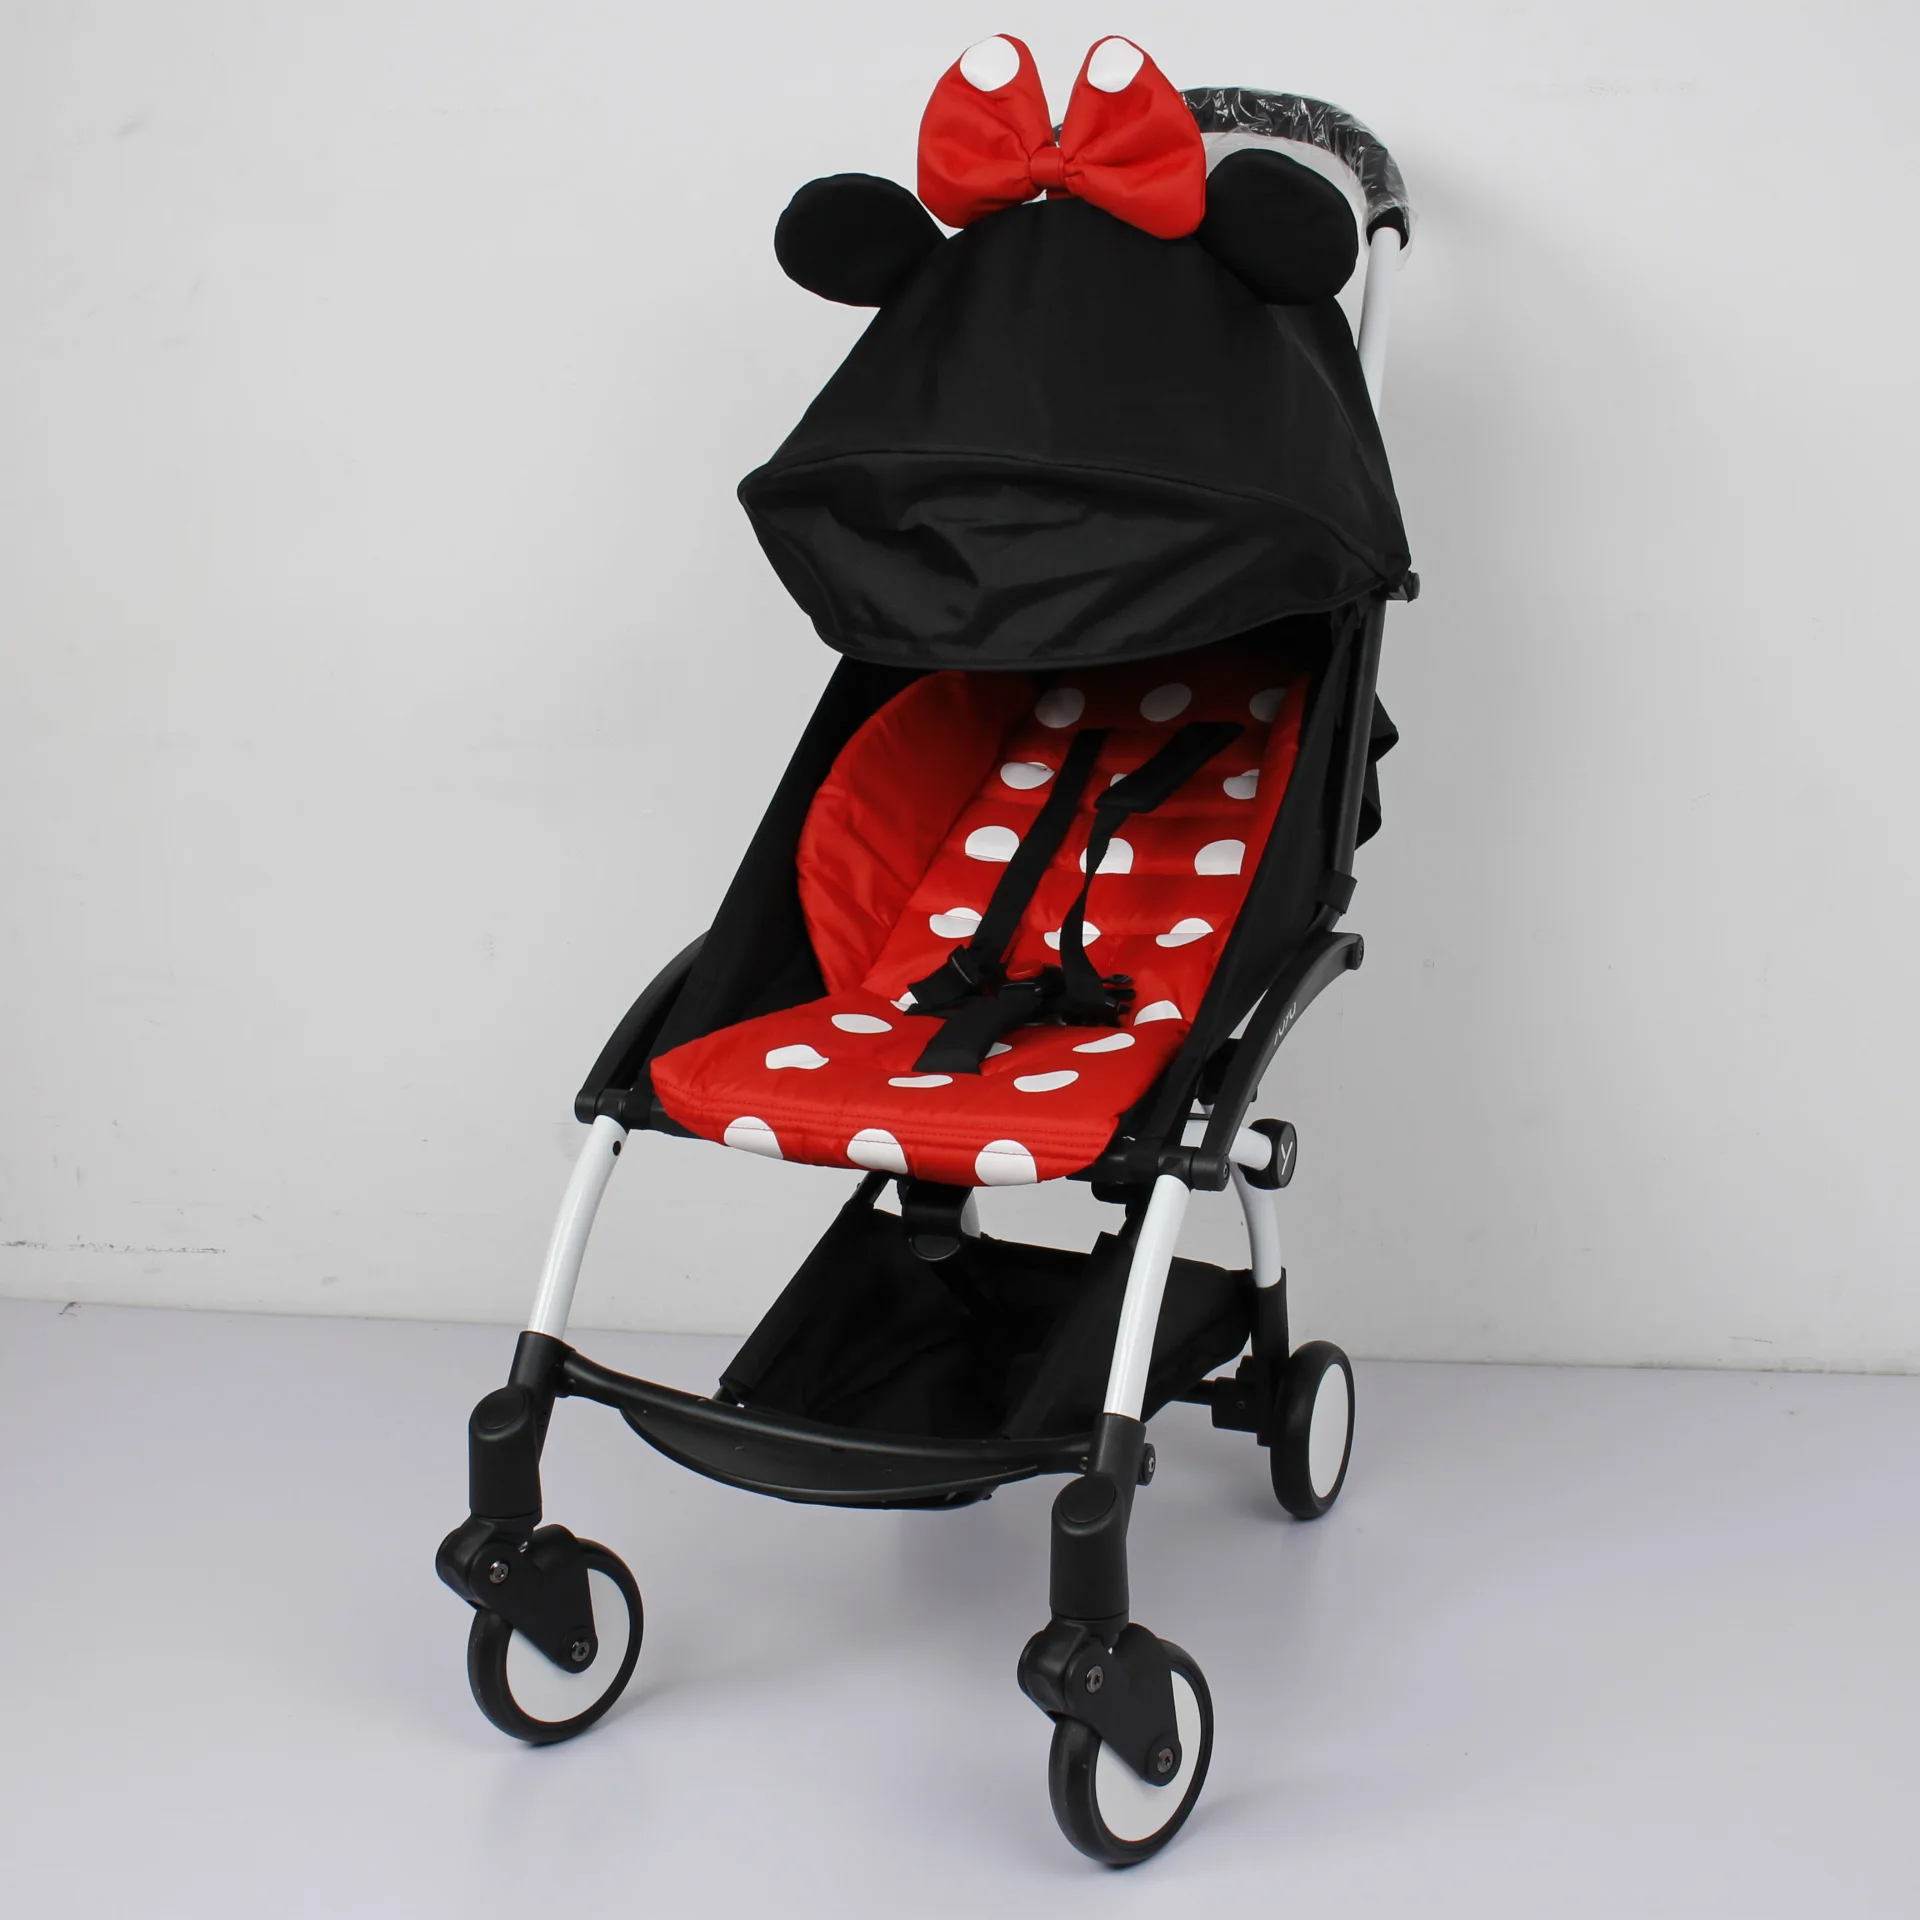 Новая детская коляска, набор ковриков для детской коляски, подушка для сиденья, защита от солнца, навес и коврик, аксессуары для детской коляски